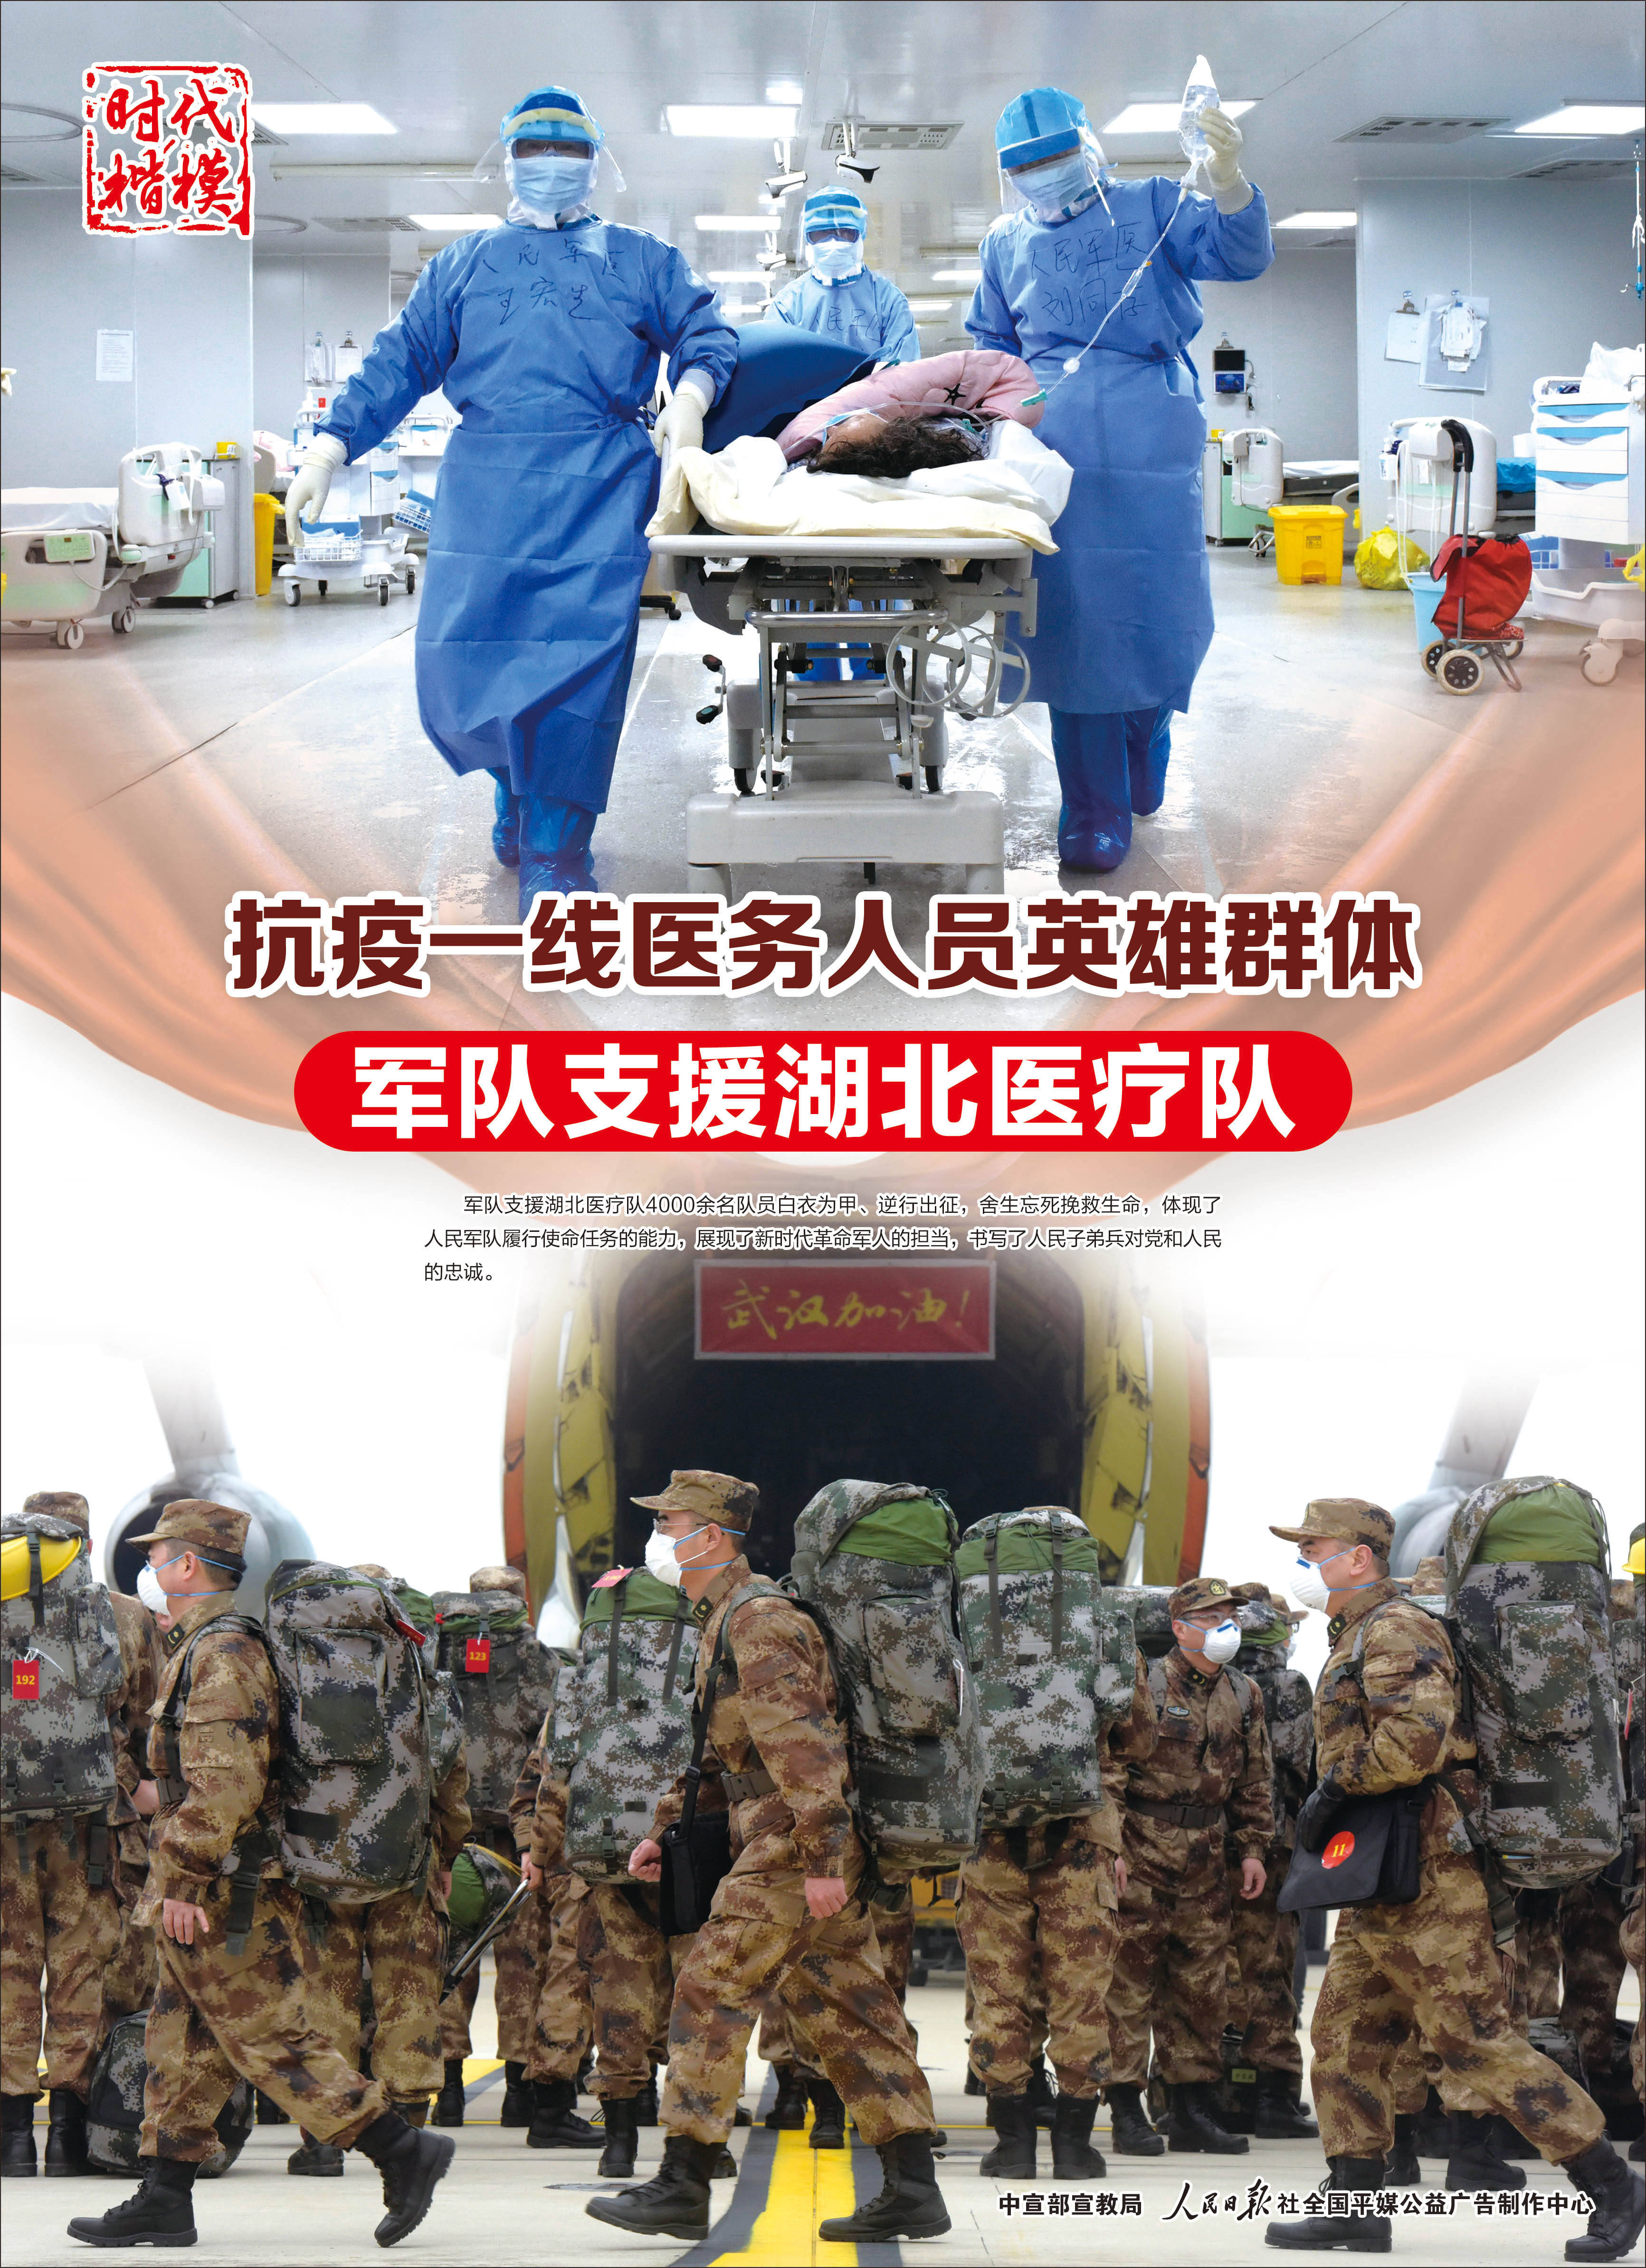 抗疫一线医务人员英雄群体——军队支援湖北医疗队